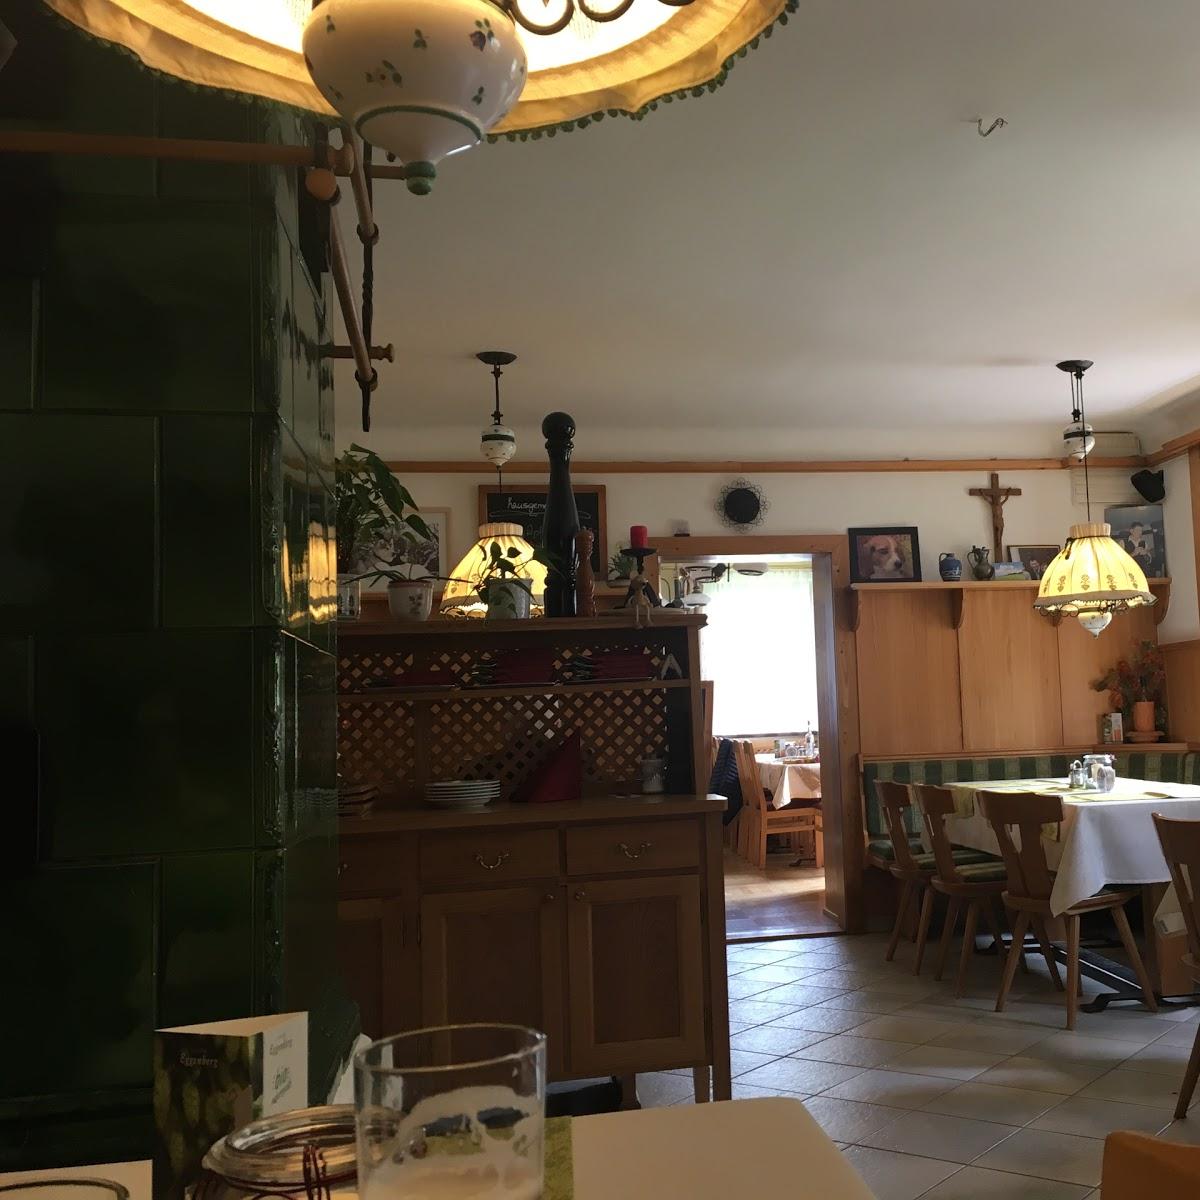 Restaurant "Gasthaus Zum Niesl" in Sankt Pankraz